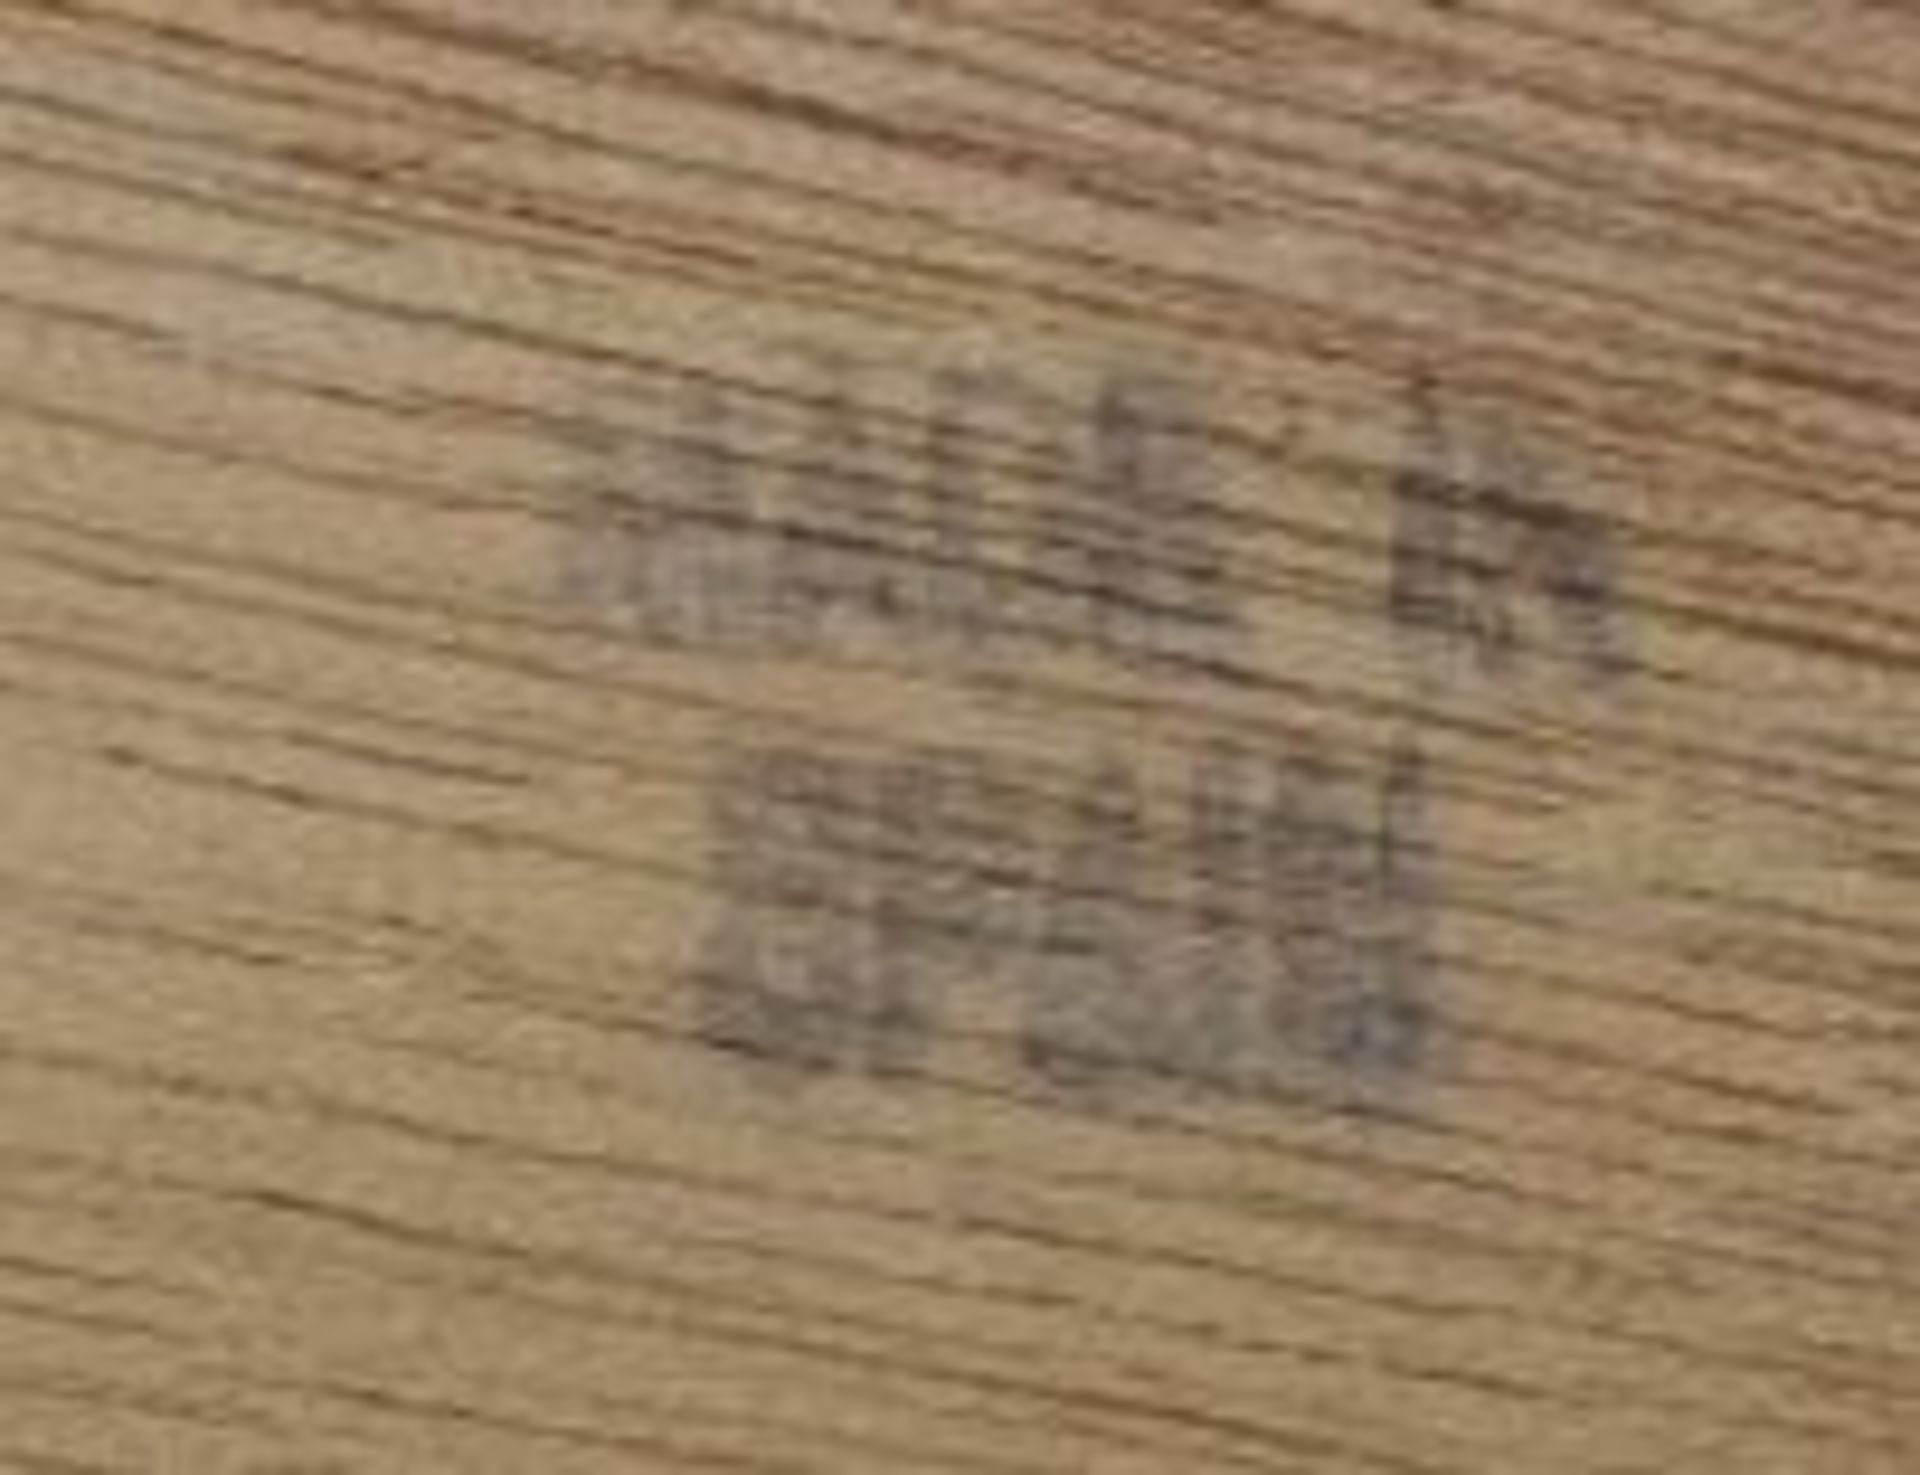 Holzkasten mit Einlegearbeiten, Spanien, H-3,5cm B-13,5cm.- - -22.61 % buyer's premium on the hammer - Bild 3 aus 3